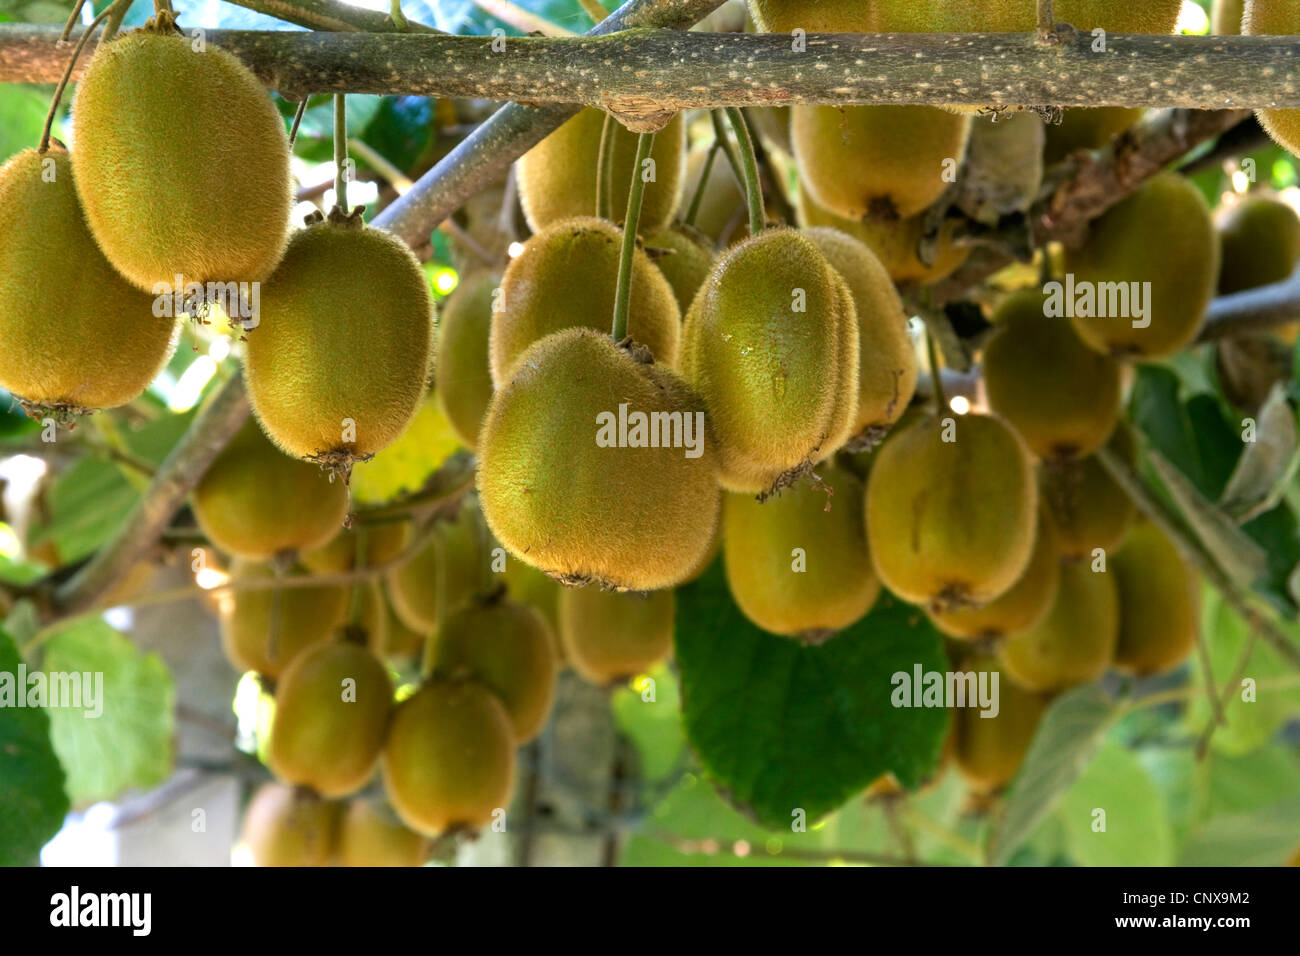 kiwi fruit, Chinese gooseberry (Actinidia deliciosa), kiwi fruits on a branch, Greece Stock Photo